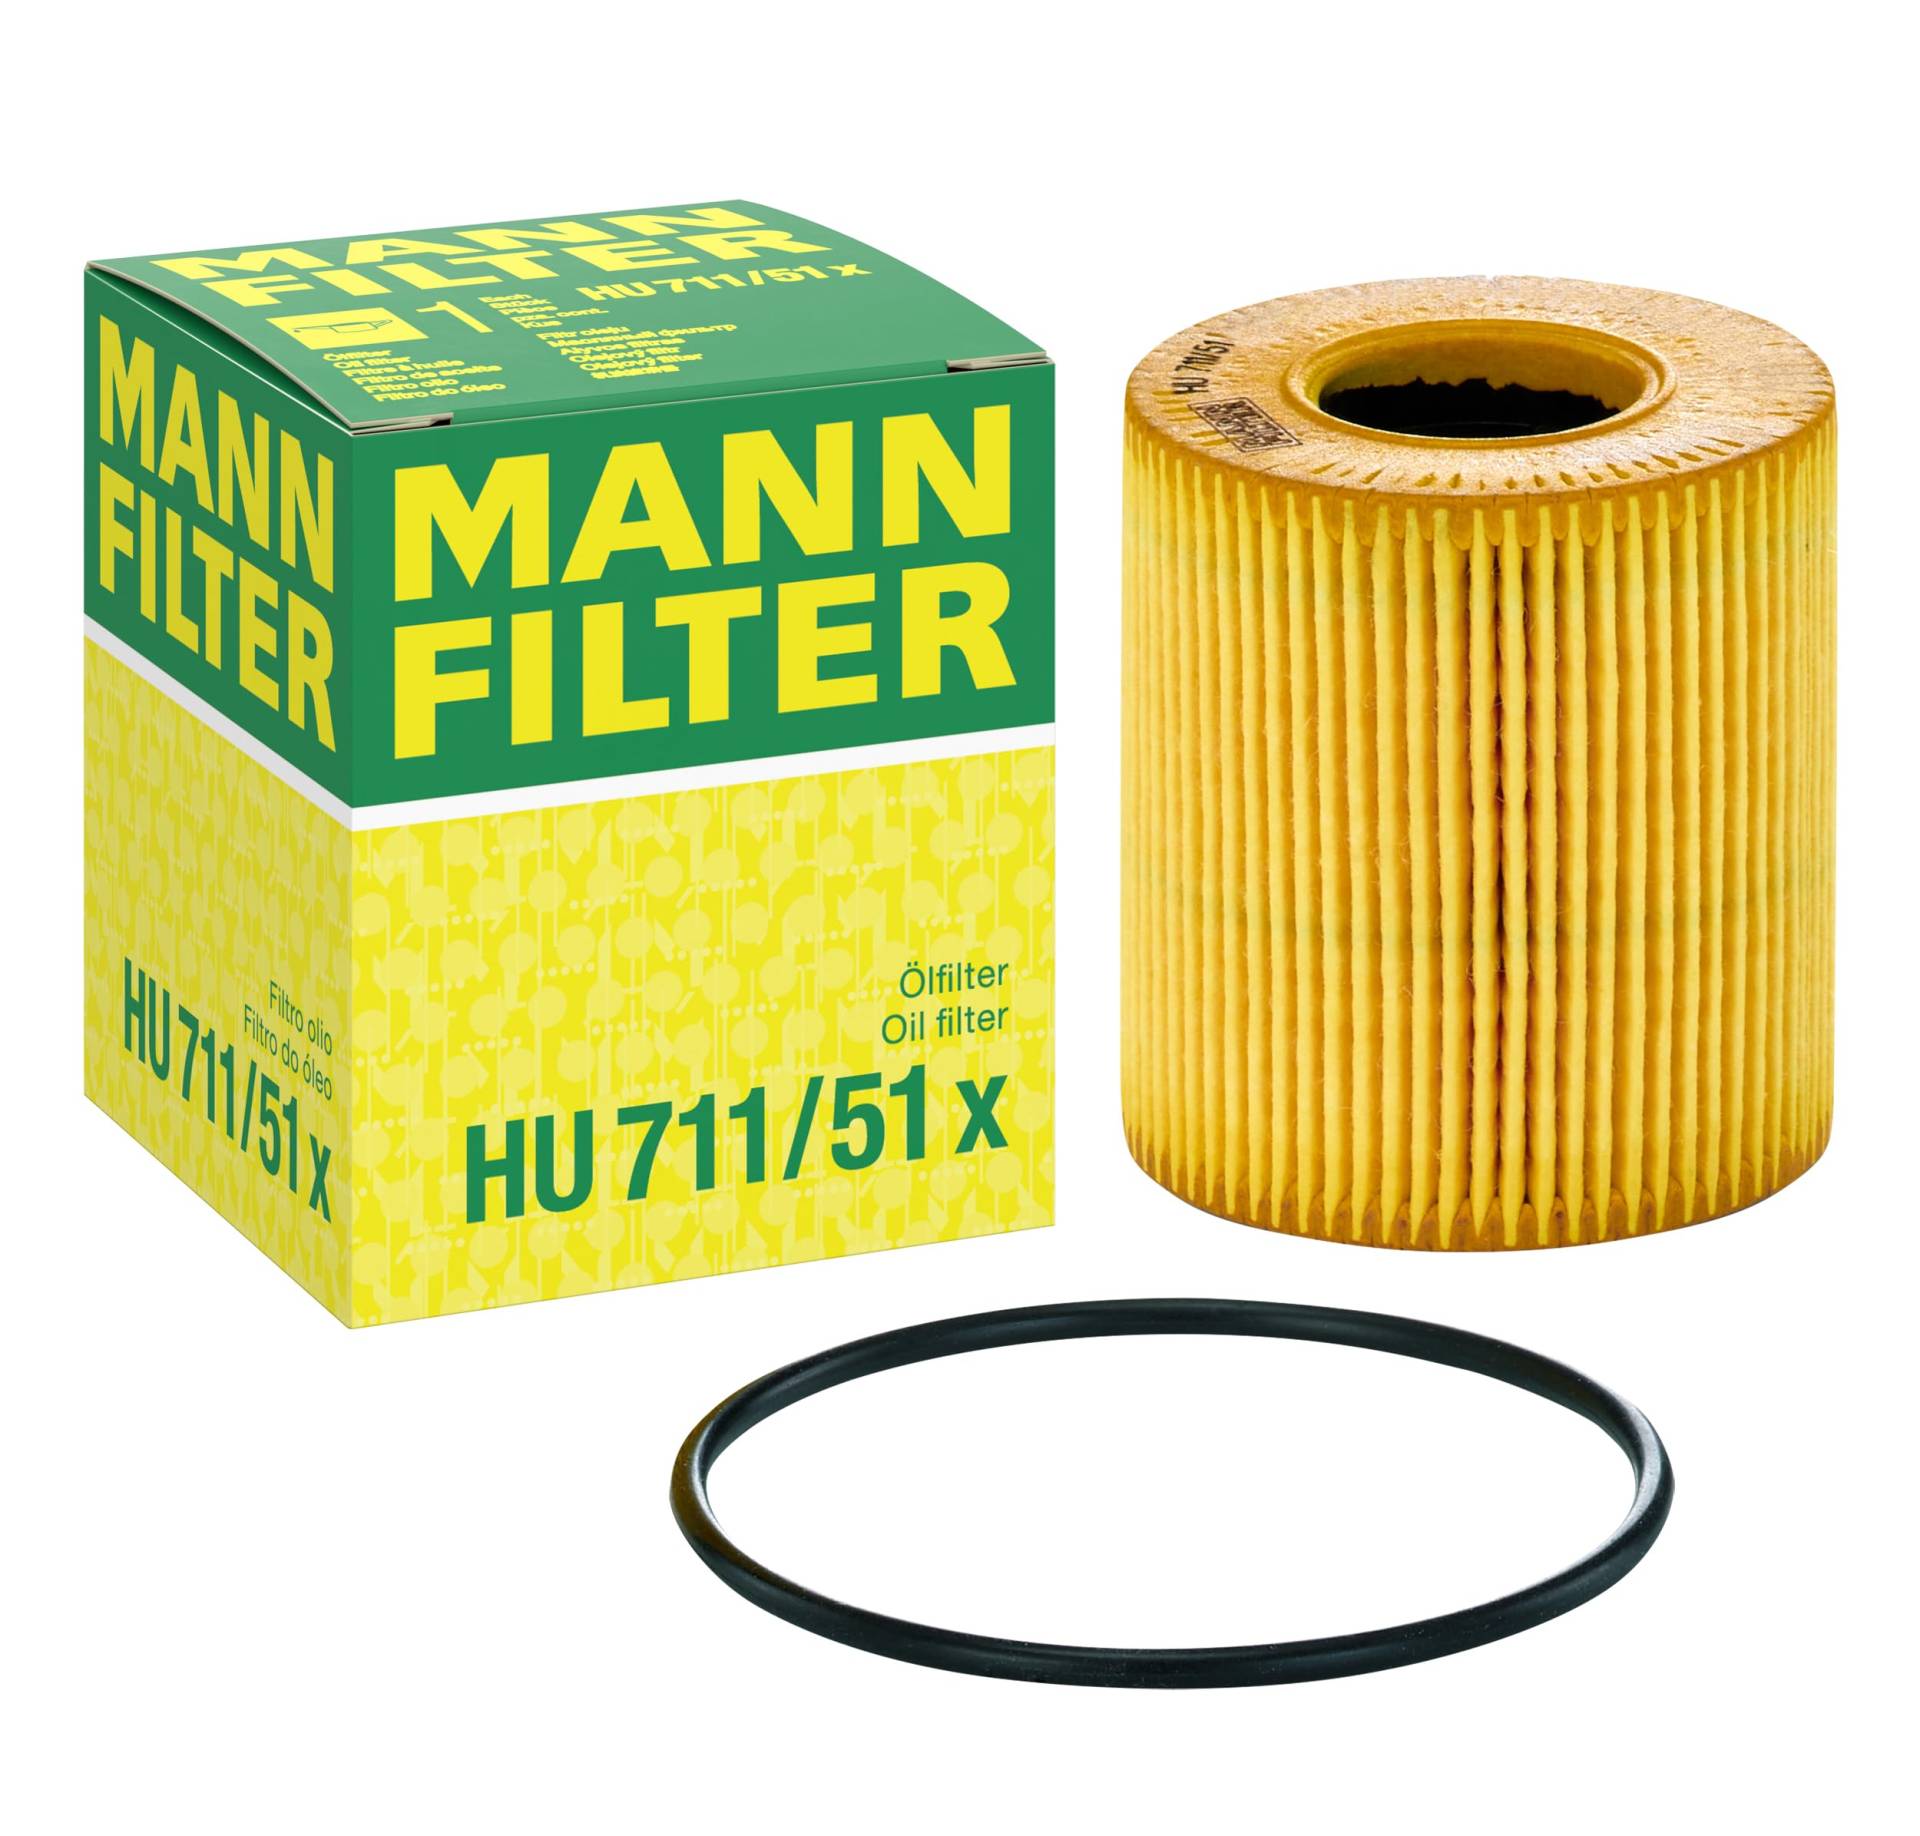 MANN-FILTER HU 711/51 X Ölfilter – Ölfilter Satz mit Dichtung/Dichtungssatz – Für PKW von MANN-FILTER